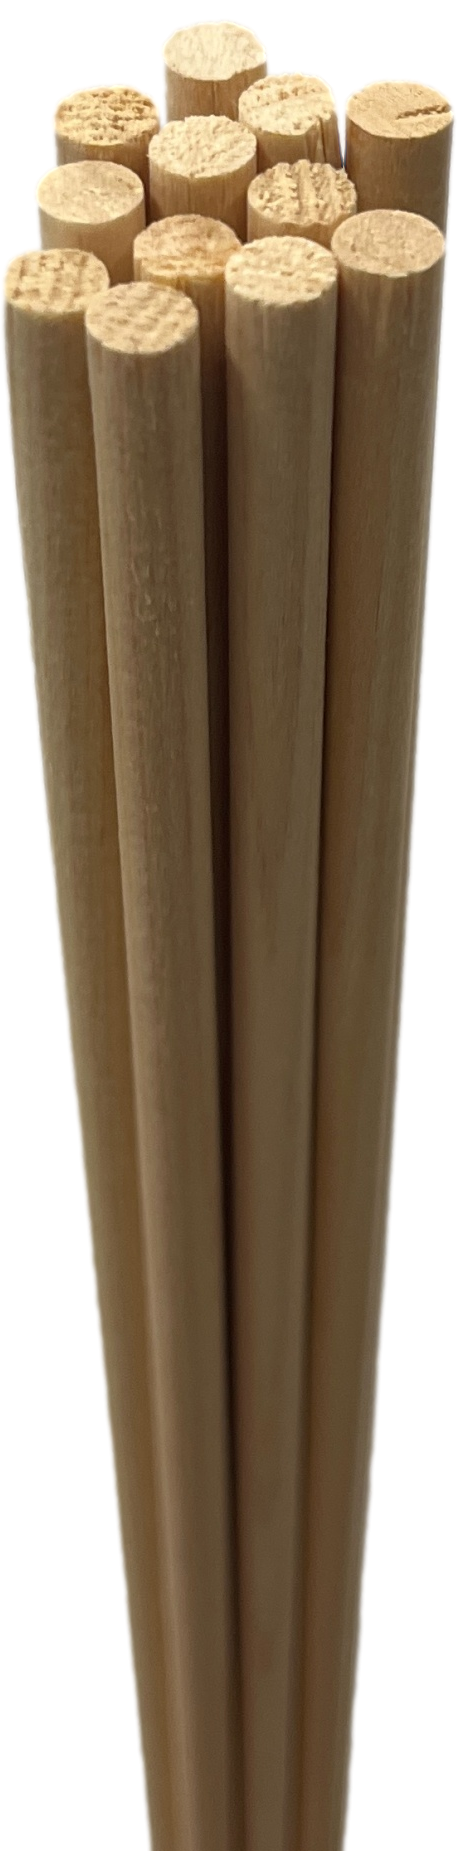 King Shafts - 1/4 inch  Cedar Shafting